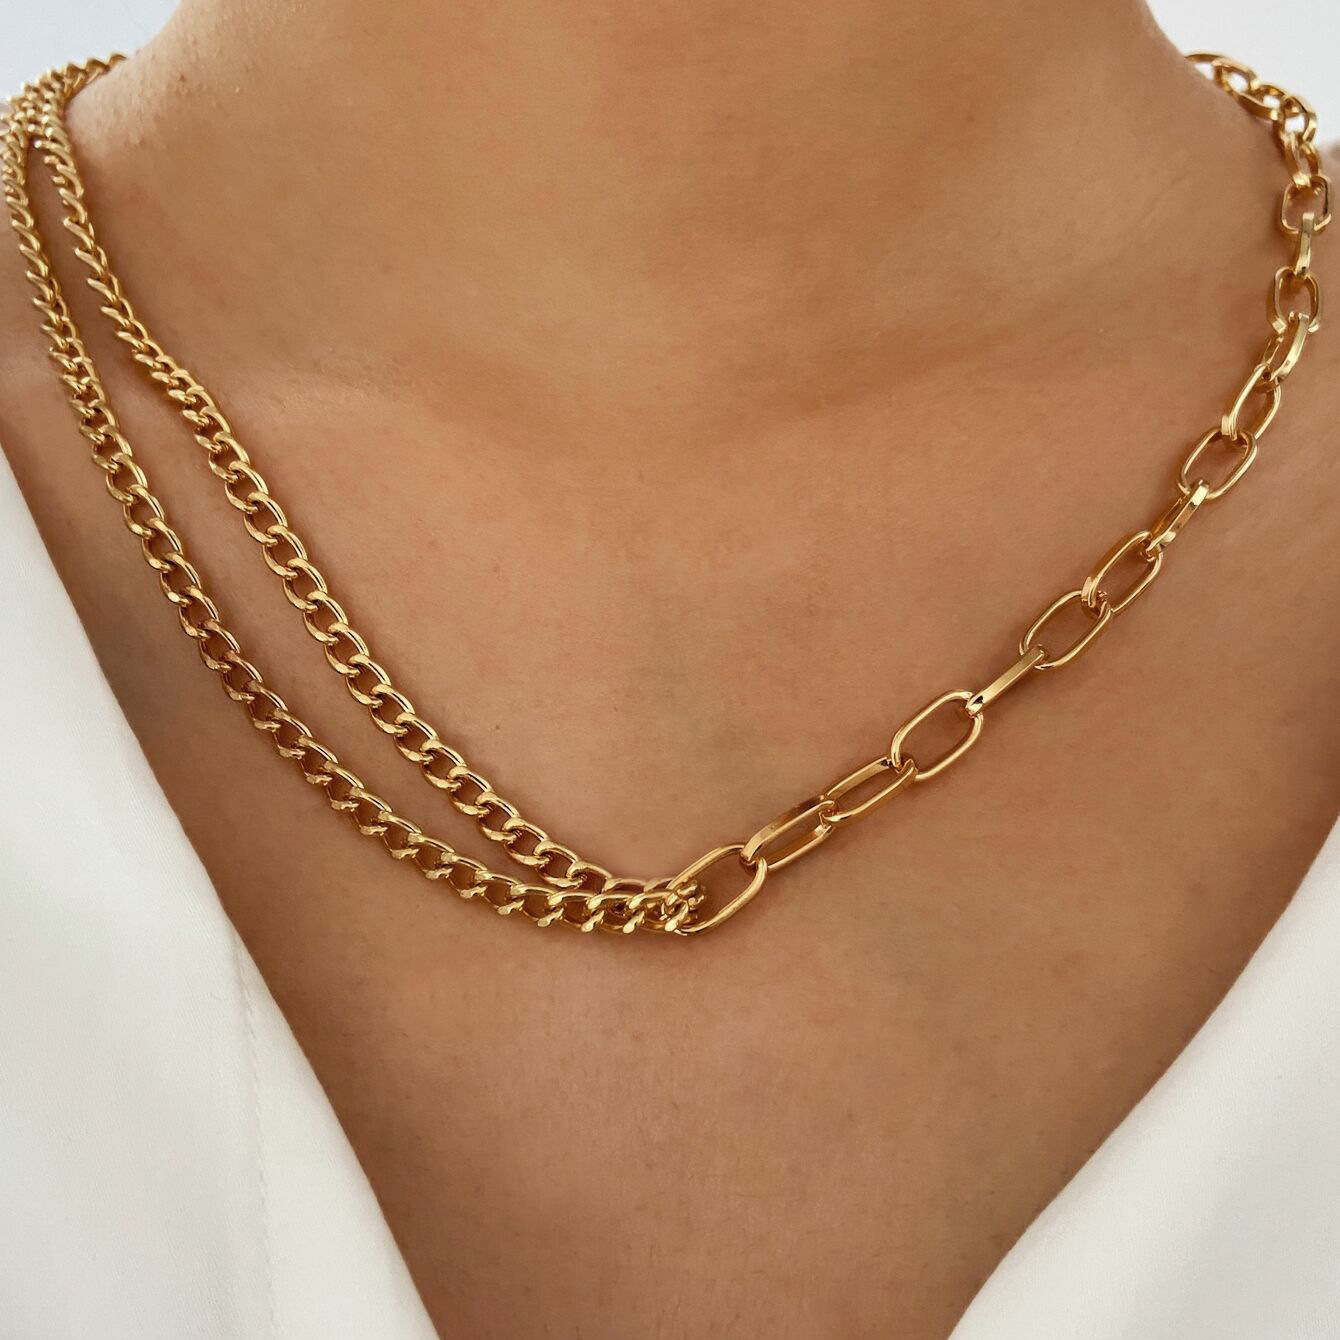 Korea Fashion New Multi-layer Necklaces Creative Retro Simple Alloy Metal Clavicle Chain